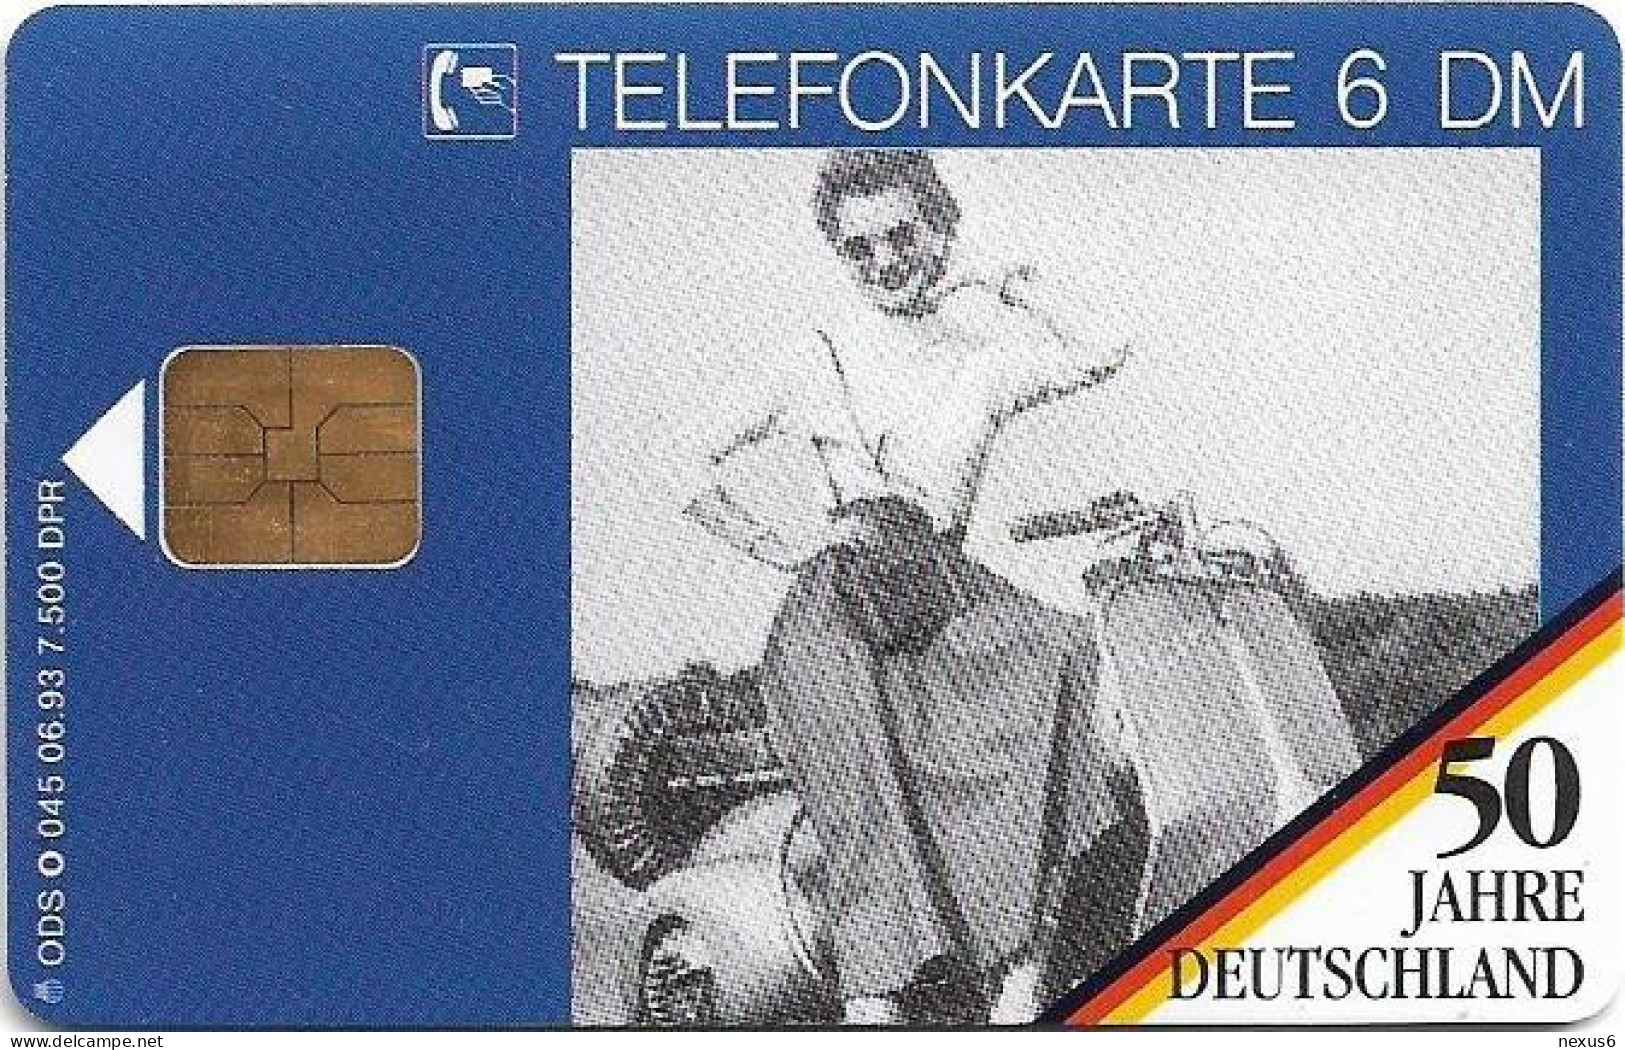 Germany - 50 Jahre Deutschland - Picknick Mit Motorroller 2 - O 0045 - 06.1993, 6DM, 7.500ex, Mint - O-Series : Séries Client